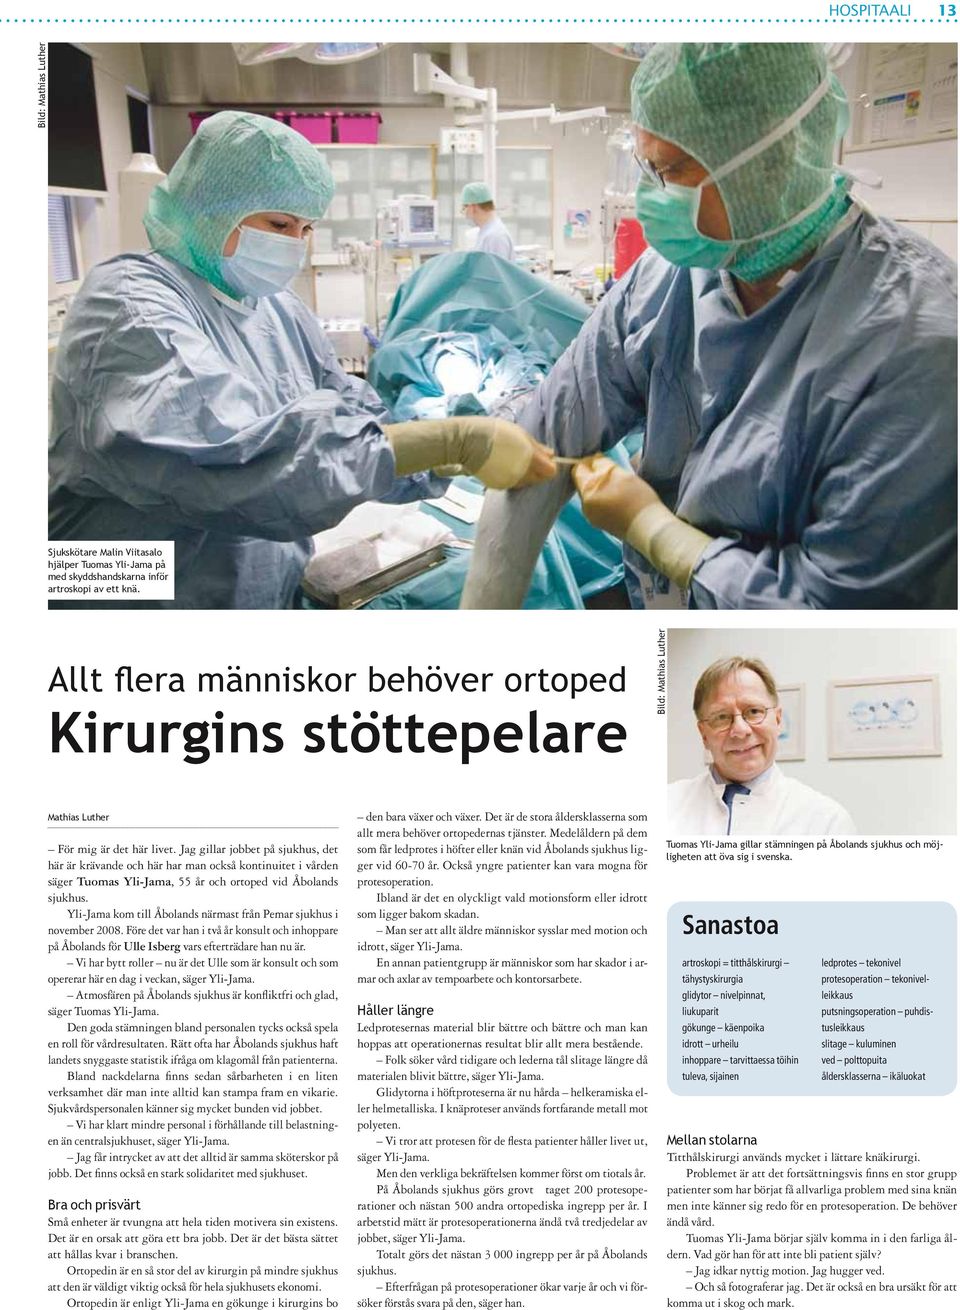 Jag gillar jobbet på sjukhus, det här är krävande och här har man också kontinuitet i vården säger Tuomas Yli-Jama, 55 år och ortoped vid Åbolands sjukhus.